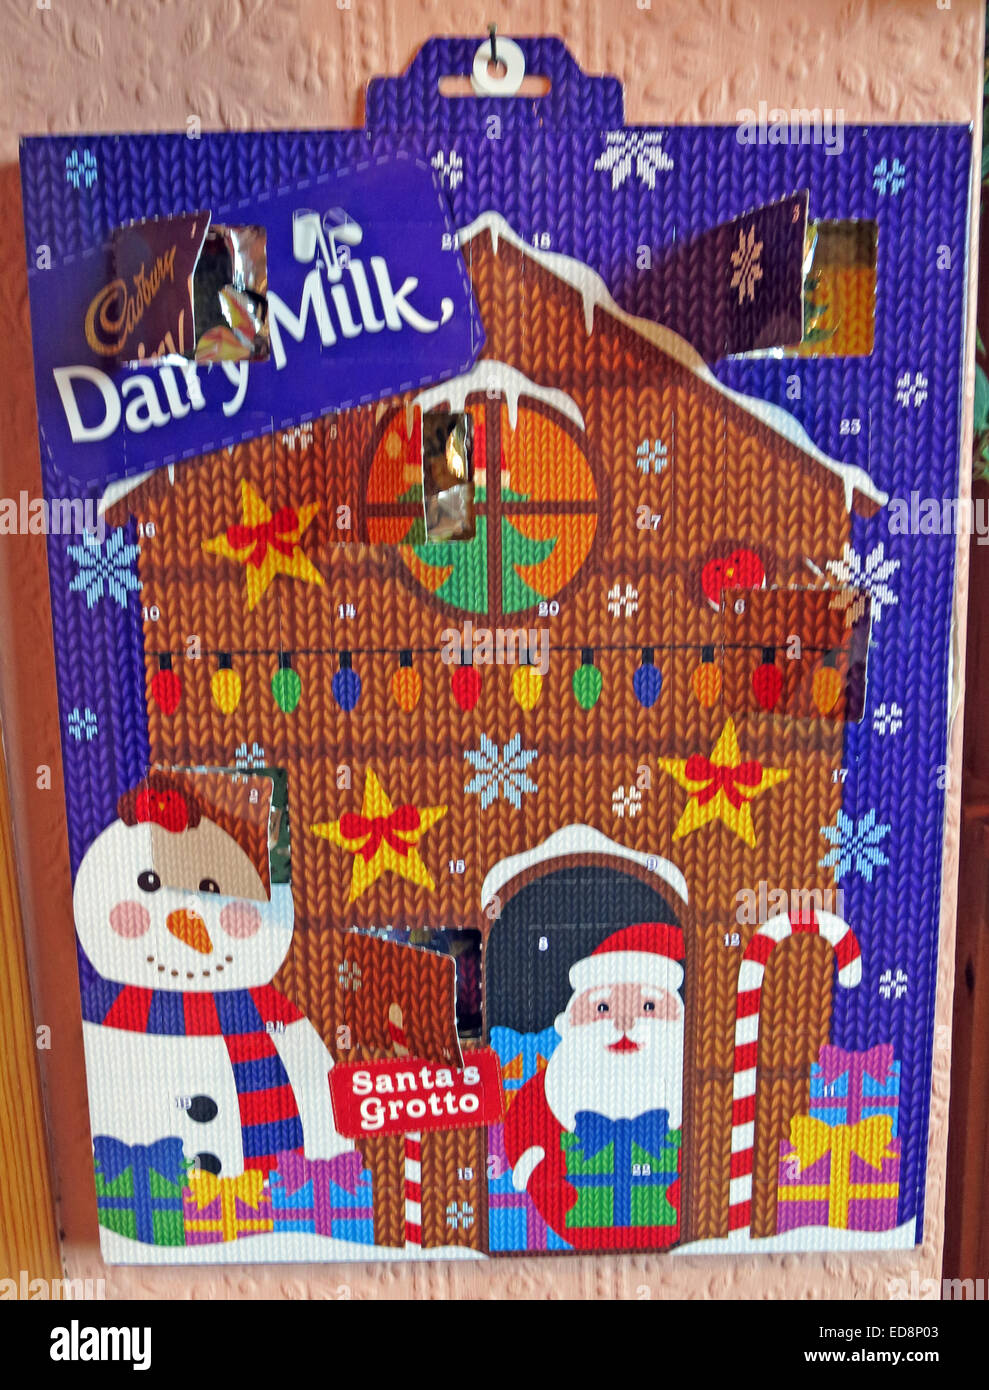 Schokoladen Adventskalender im Dezember, Weihnachten, mit einem Fenster  öffnen Stockfotografie - Alamy